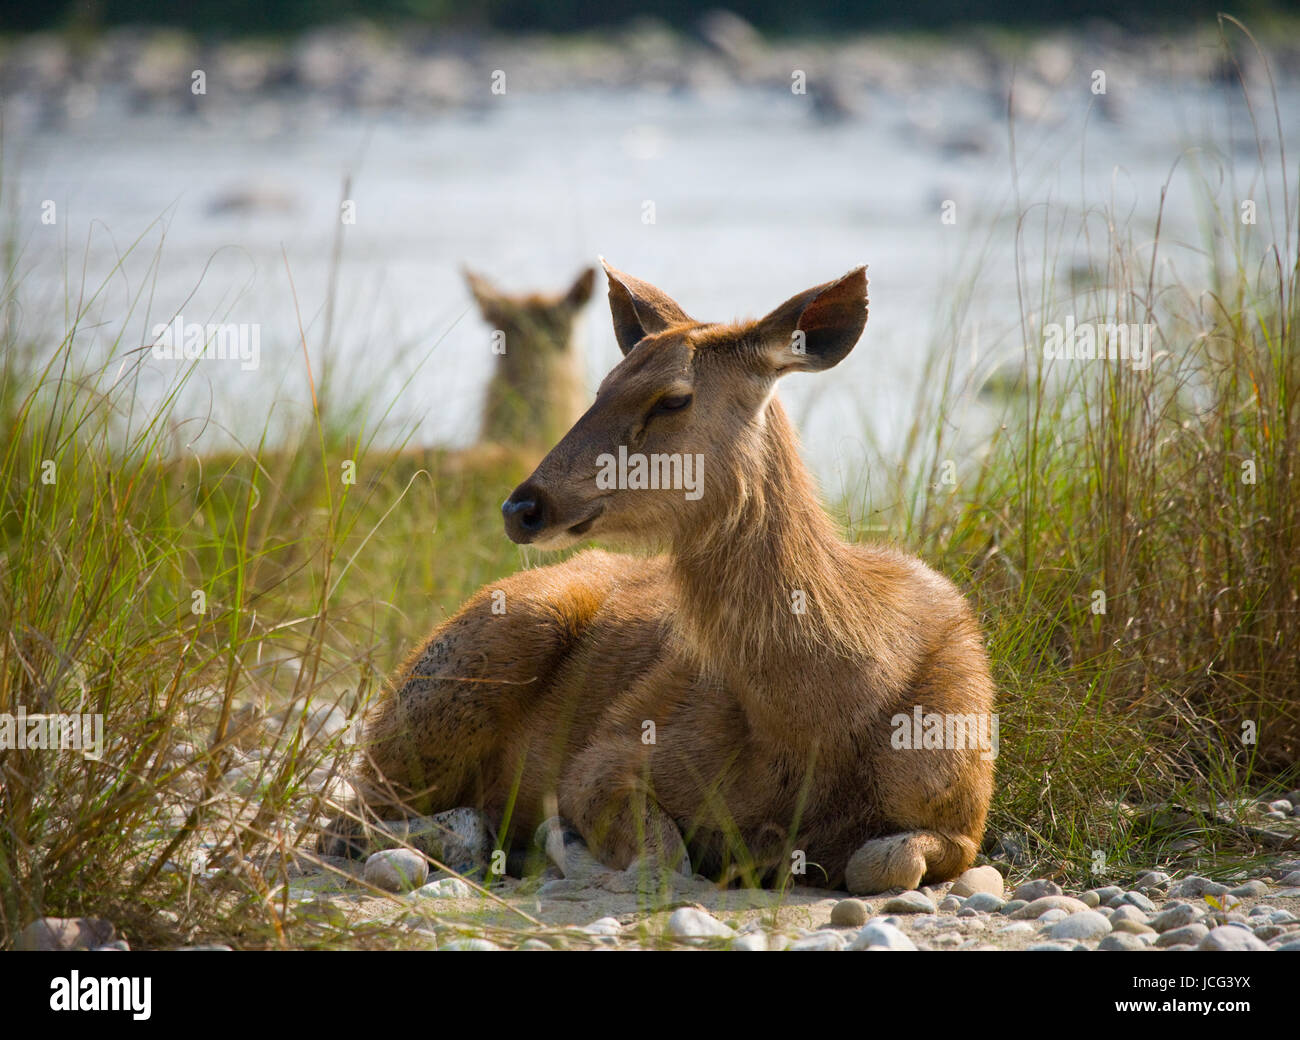 Hirsche, die am Flussufer im Gras in der Wildnis liegen. Indien. Nationalpark. Stockfoto